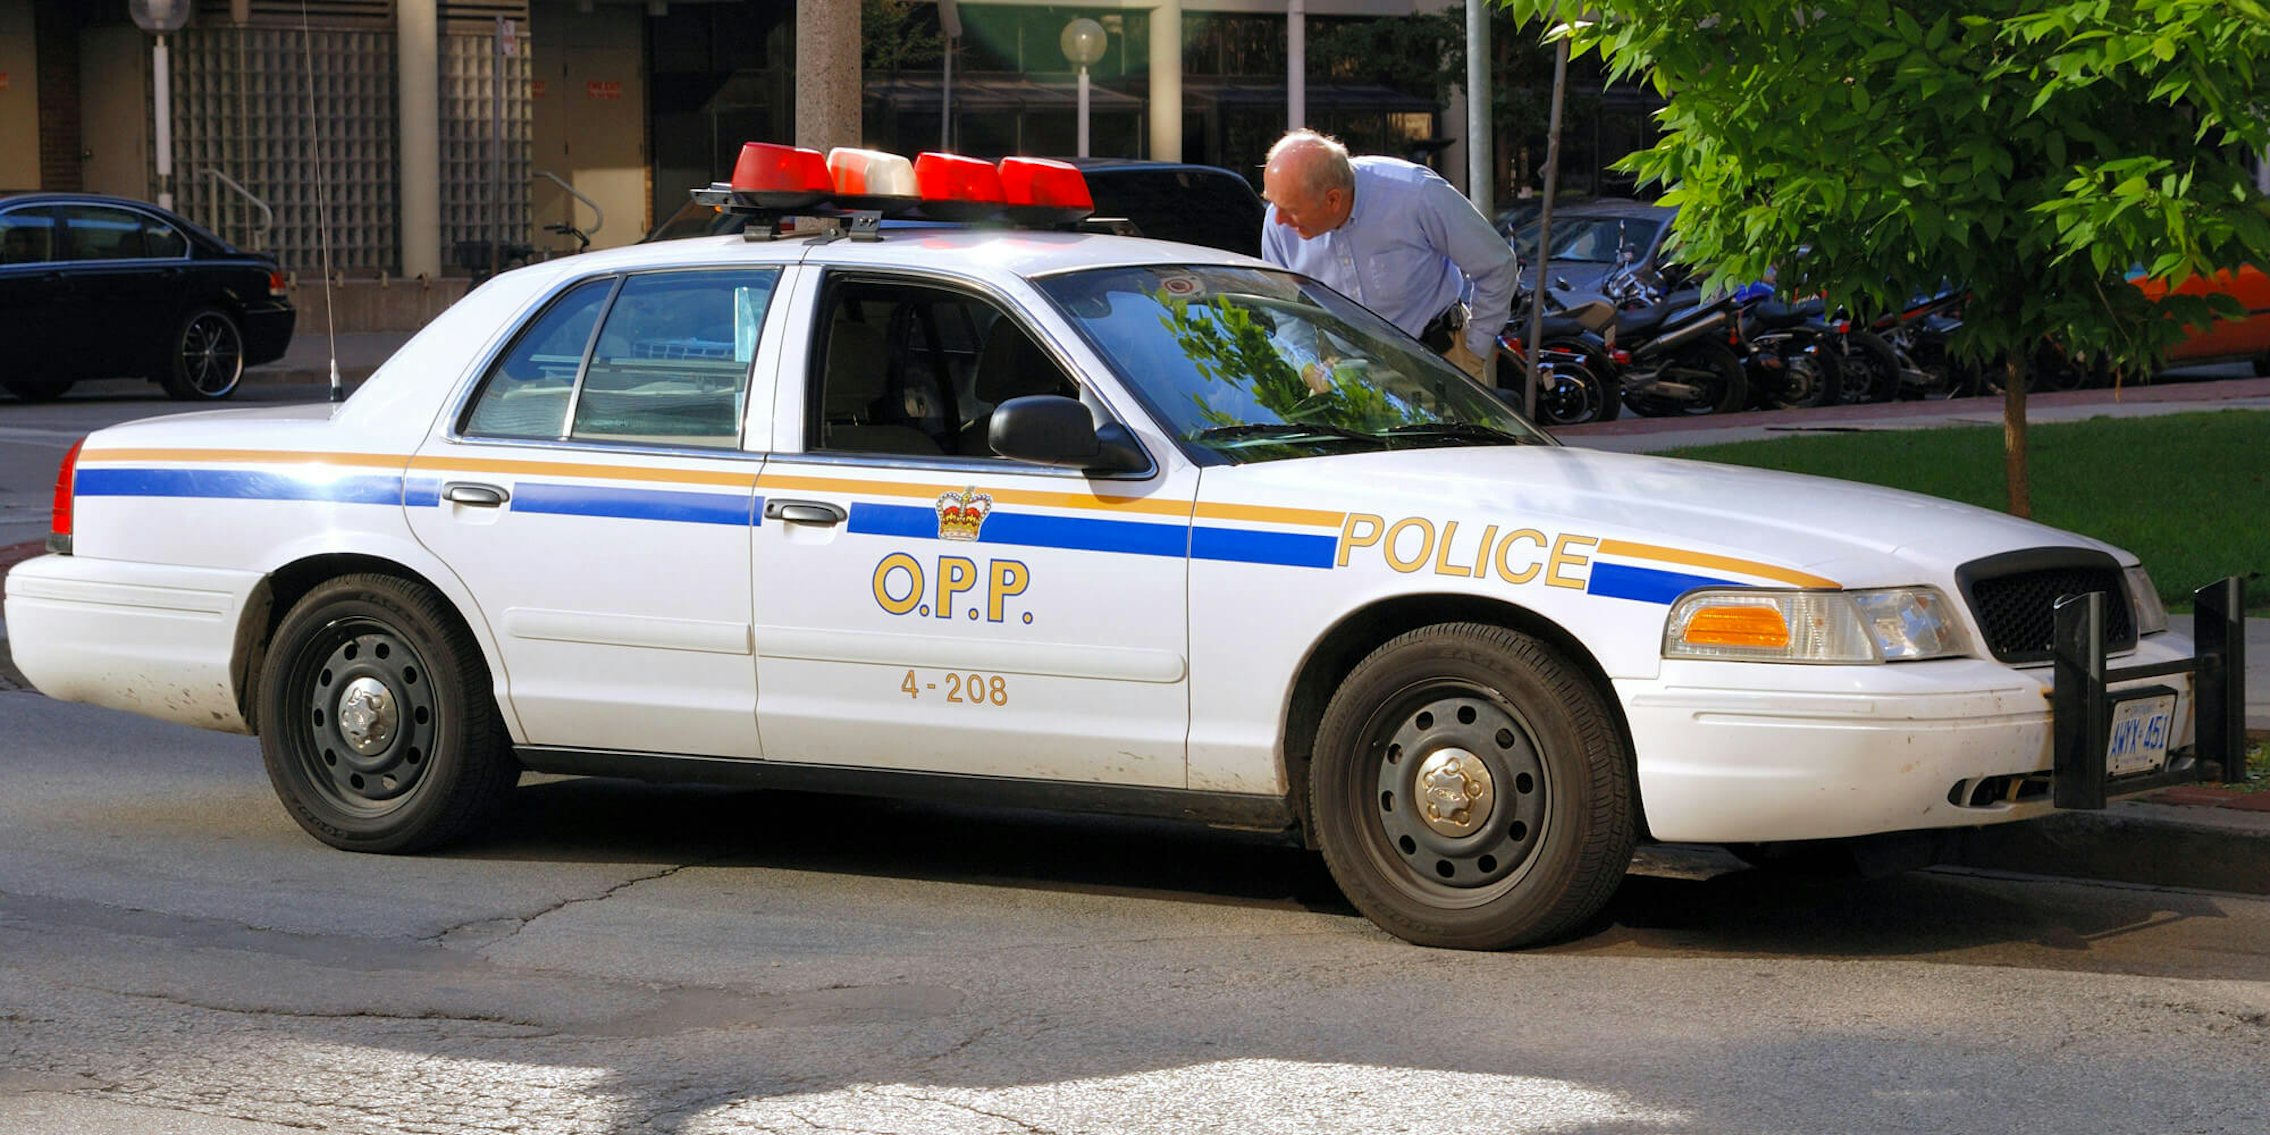 An Ontario Provincial Police in Toronto